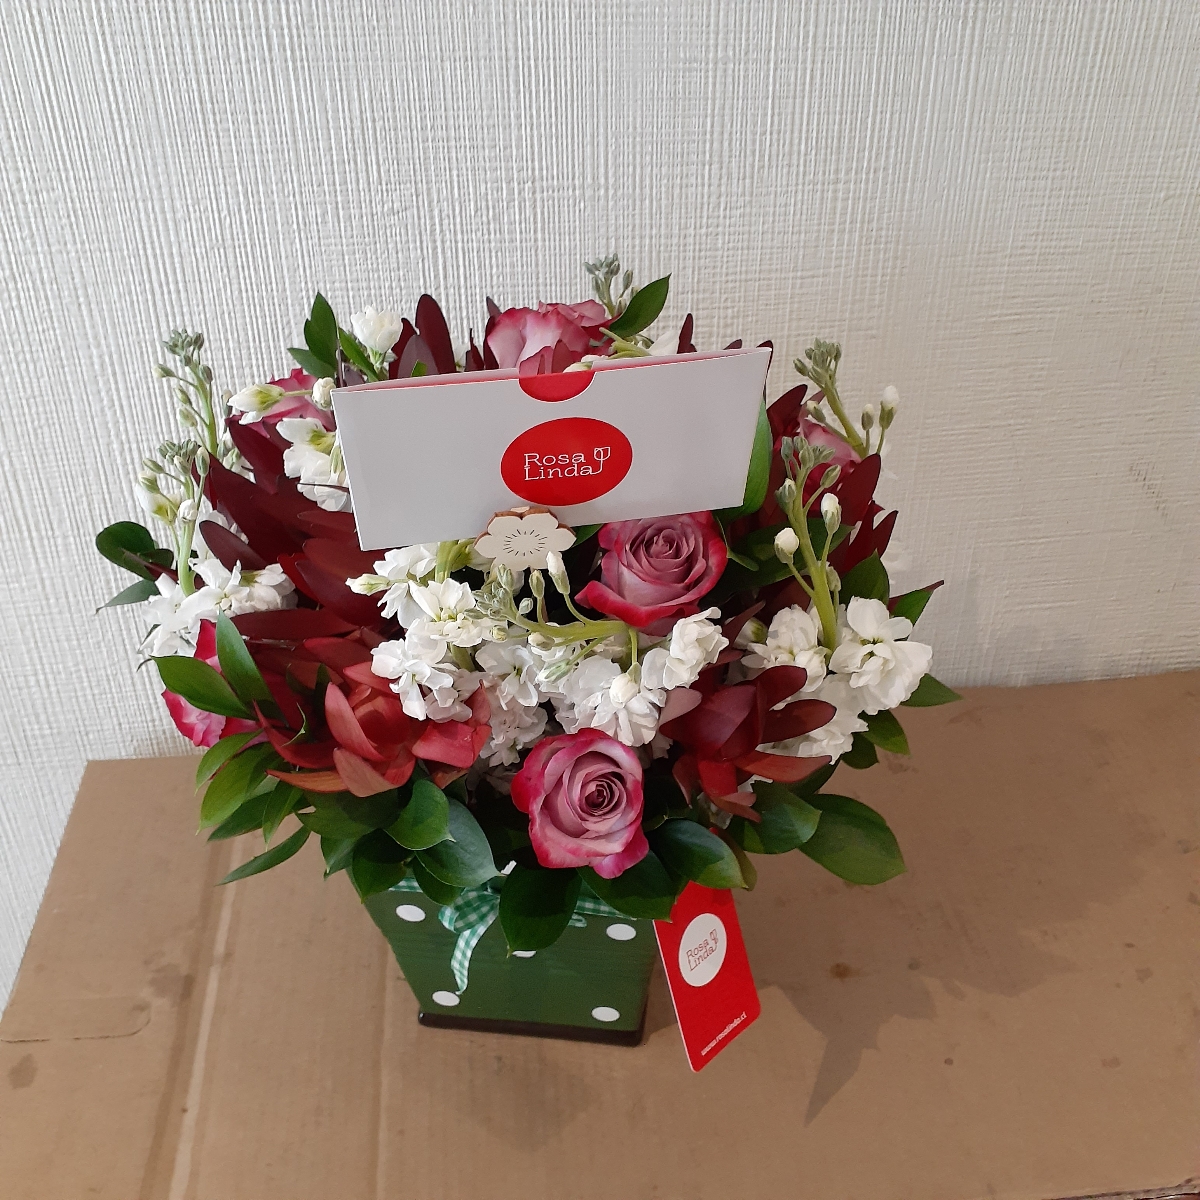 Melissa rosas Lila - Arreglo floral con rosas lilas, leucadendros y alelíes blancos - Pedido 239031